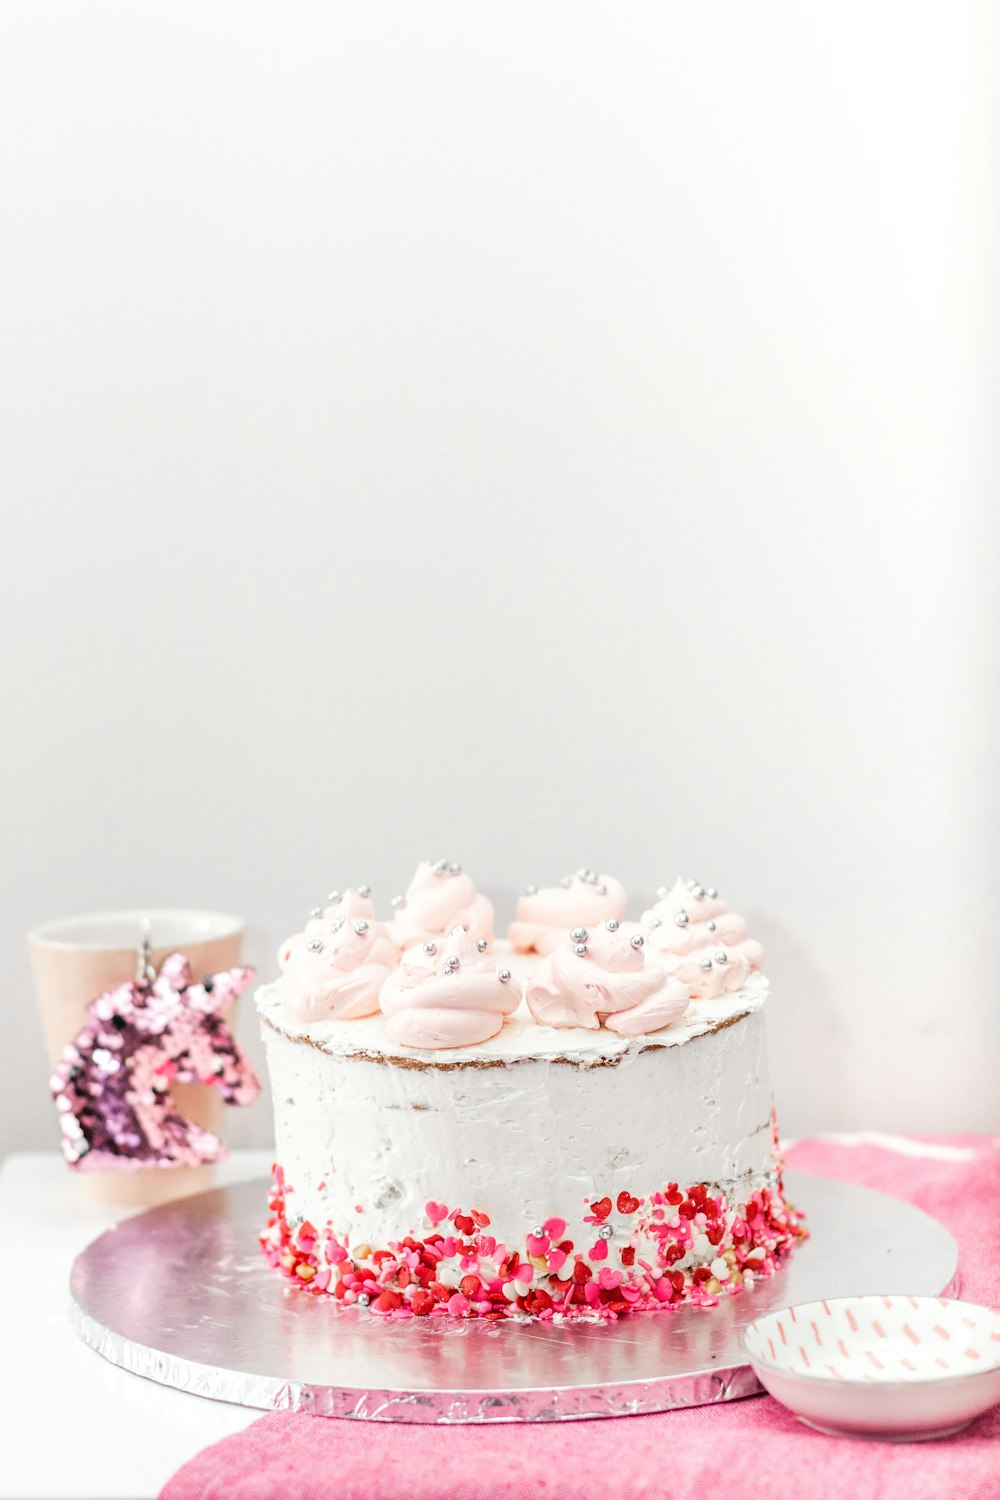 흰색 테이블에 흰색과 분홍색 케이크